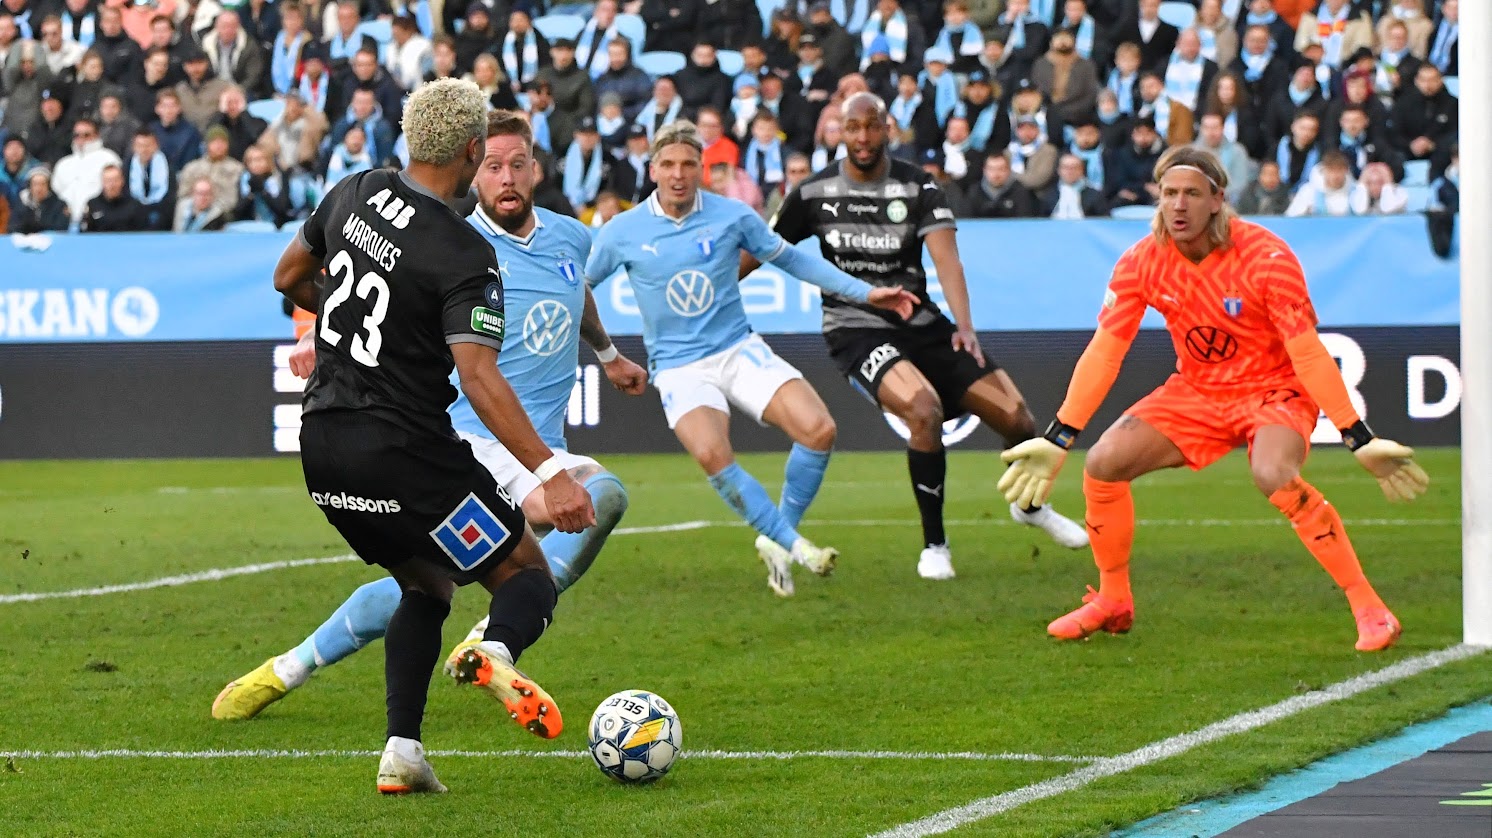 Hedersam förlust mot Malmö FF: ”Uppoffrande spel”